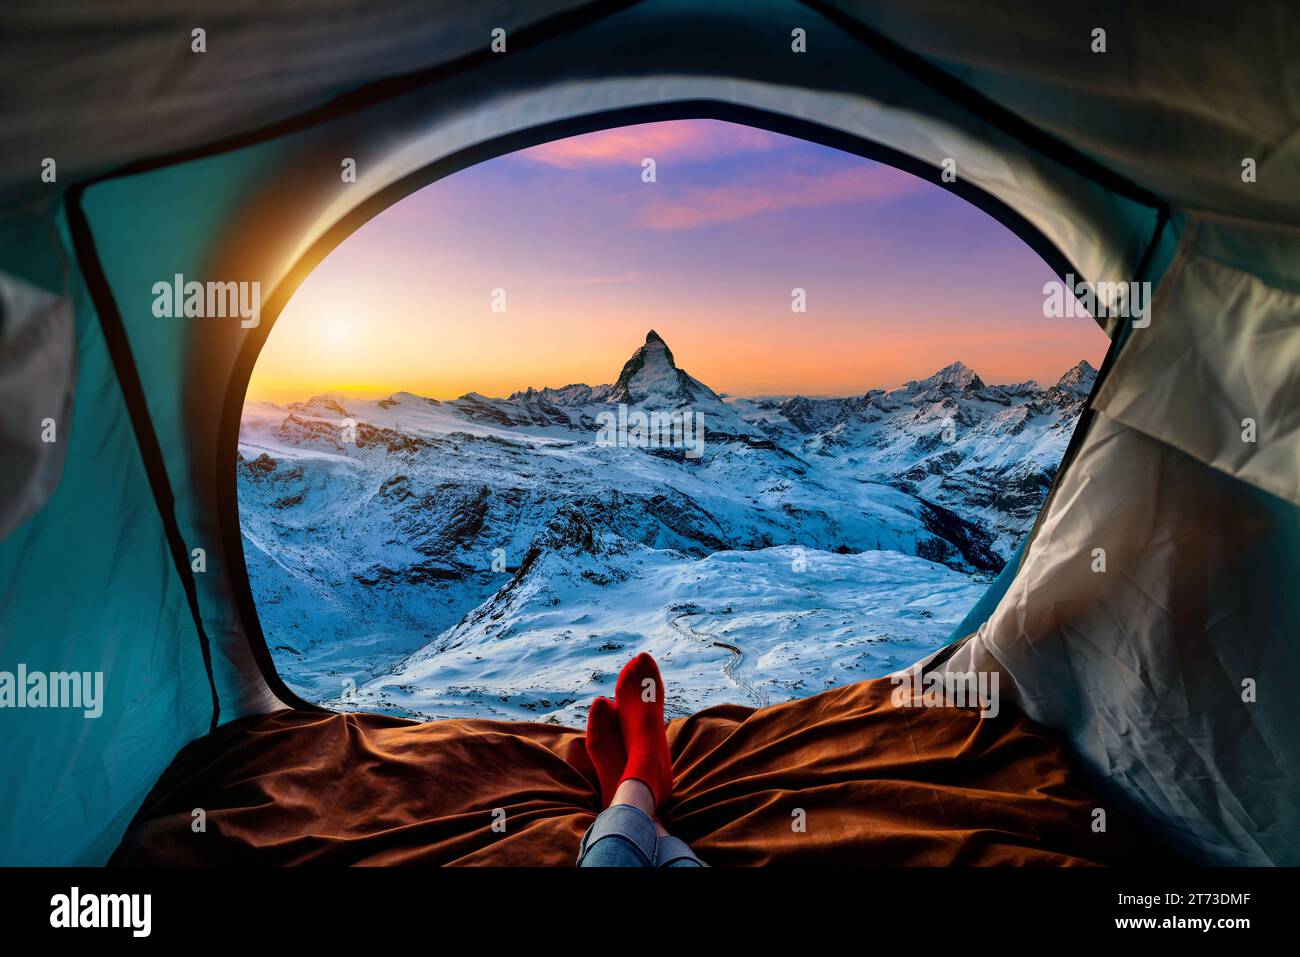 Frau mit Kreuzbein auf Decke im Campingzelt mit Schlafsäcken auf dem Berghang. Blick von innen auf das Matterhorn. Stockfoto